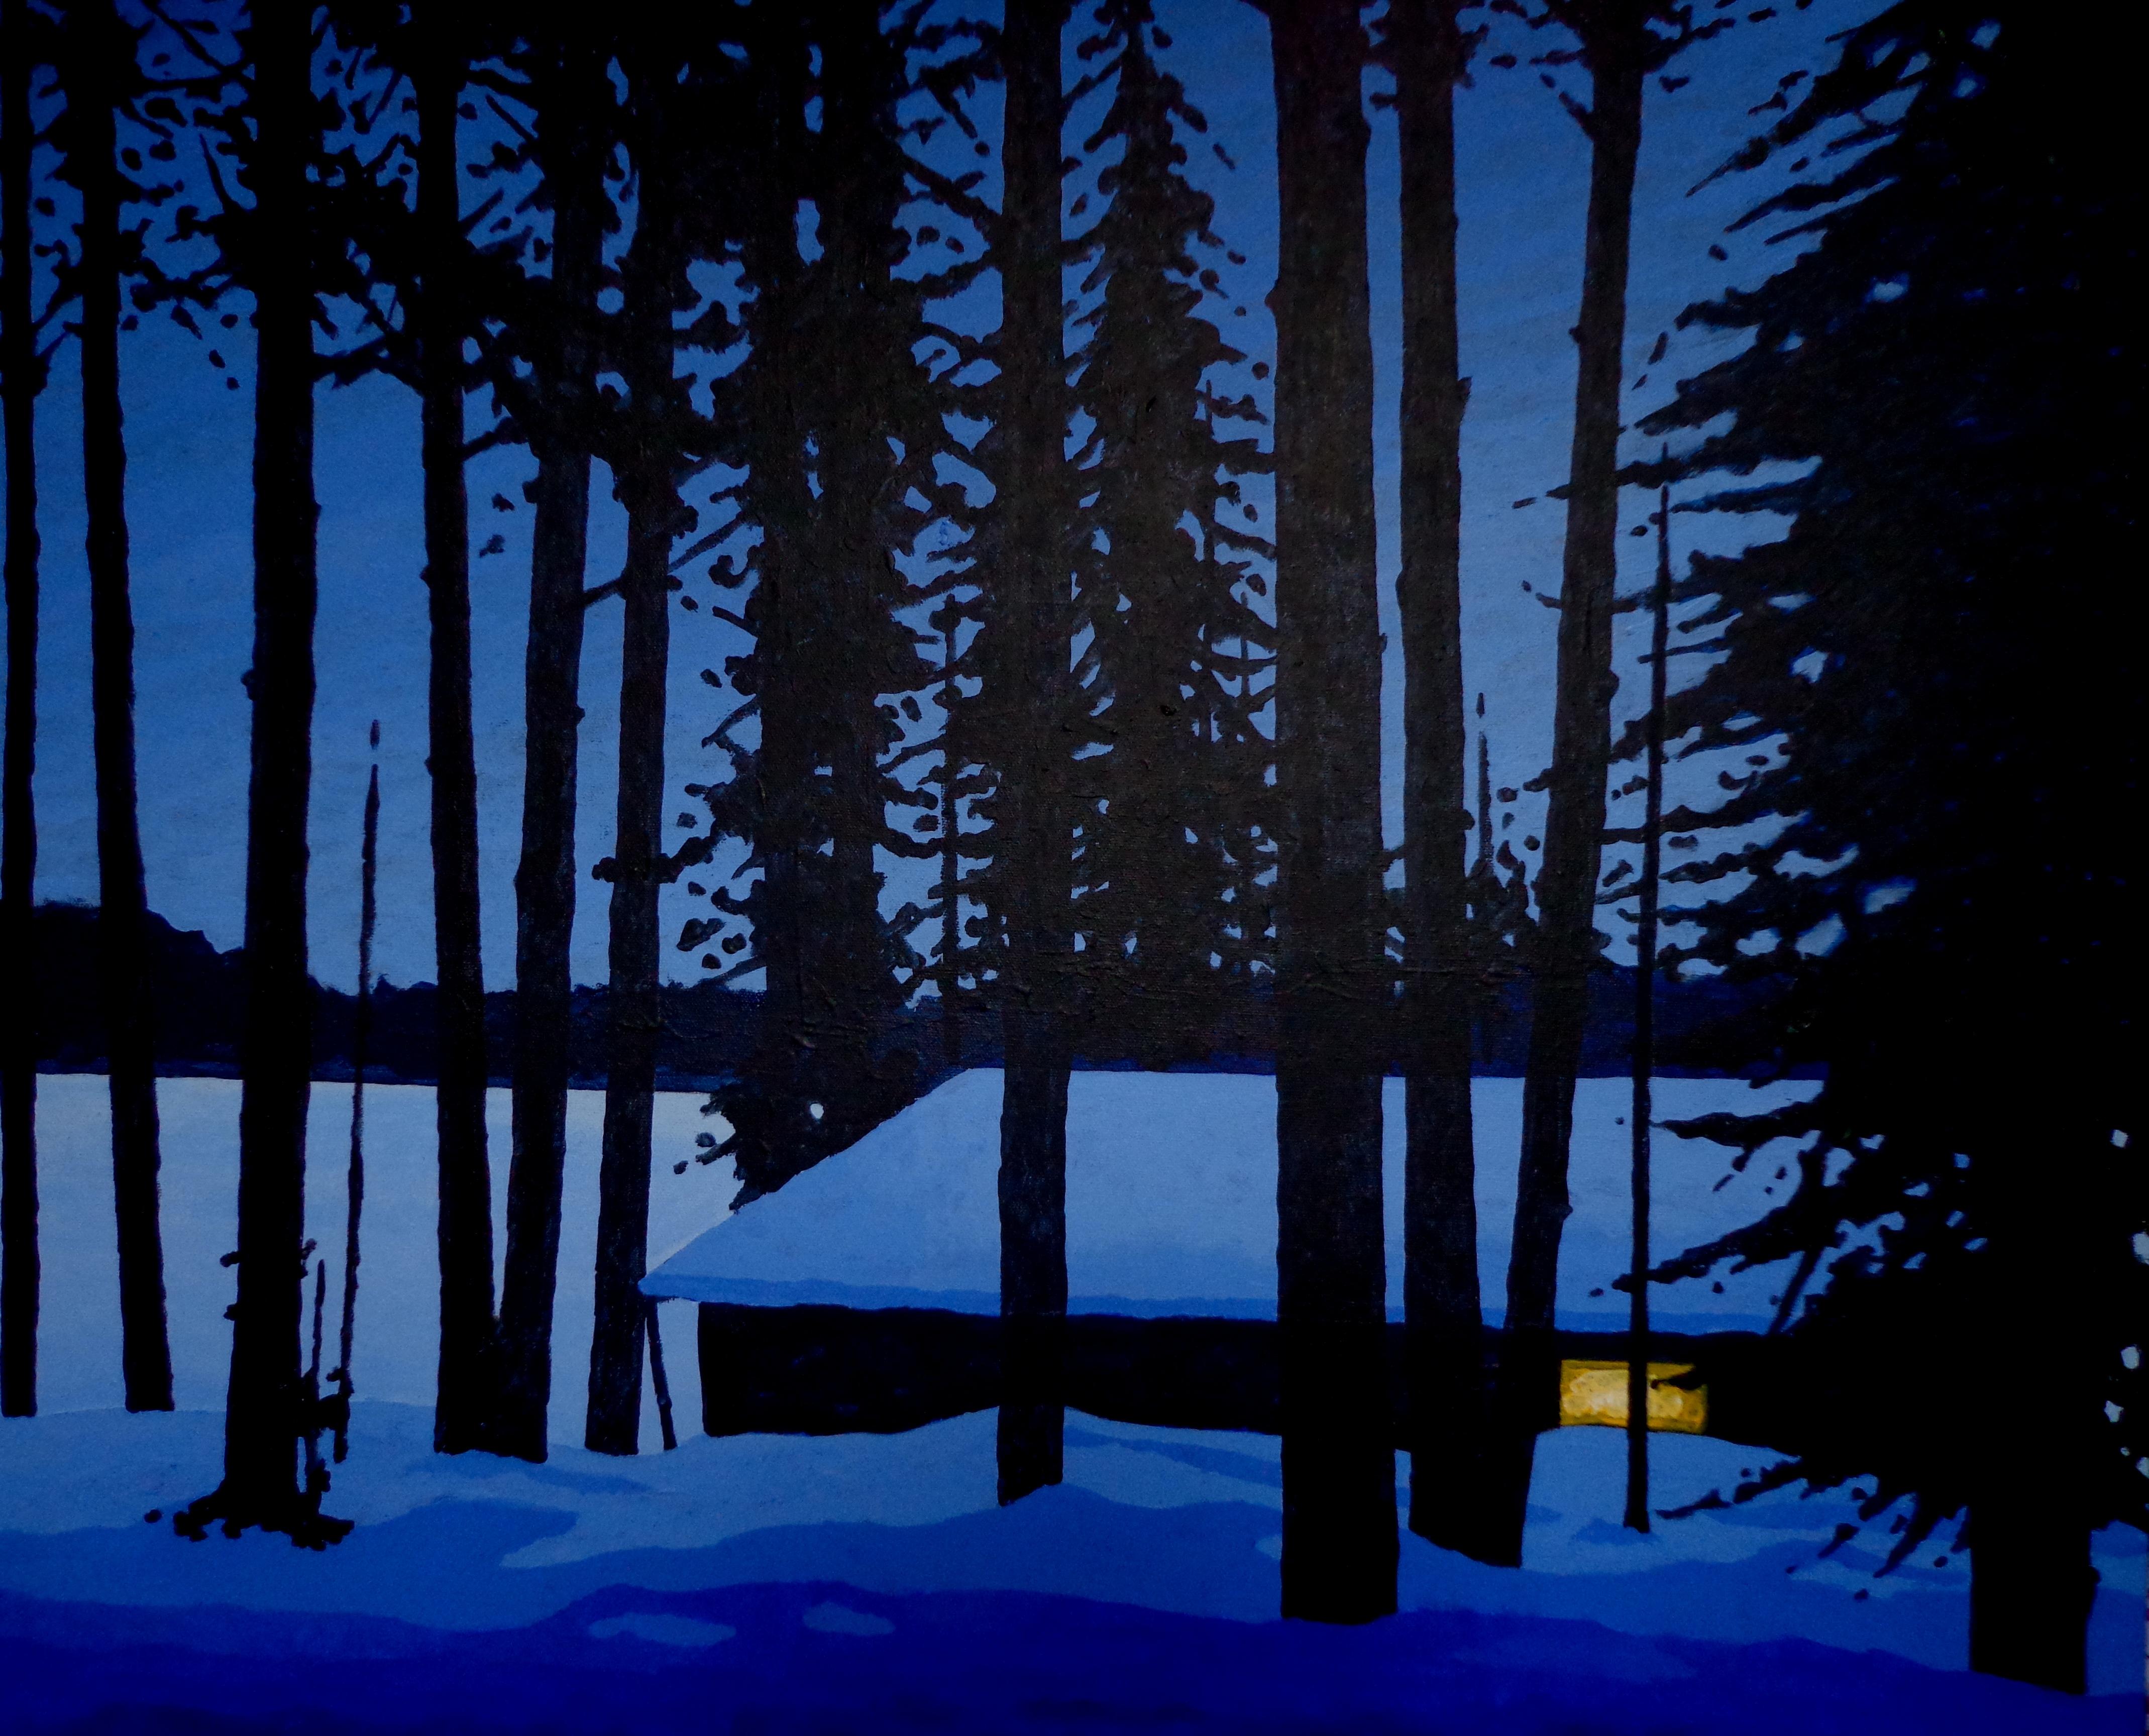 Landscape Painting Ricardo Maldonado - WARM à l'intérieur - Peinture sombre au bord du lac